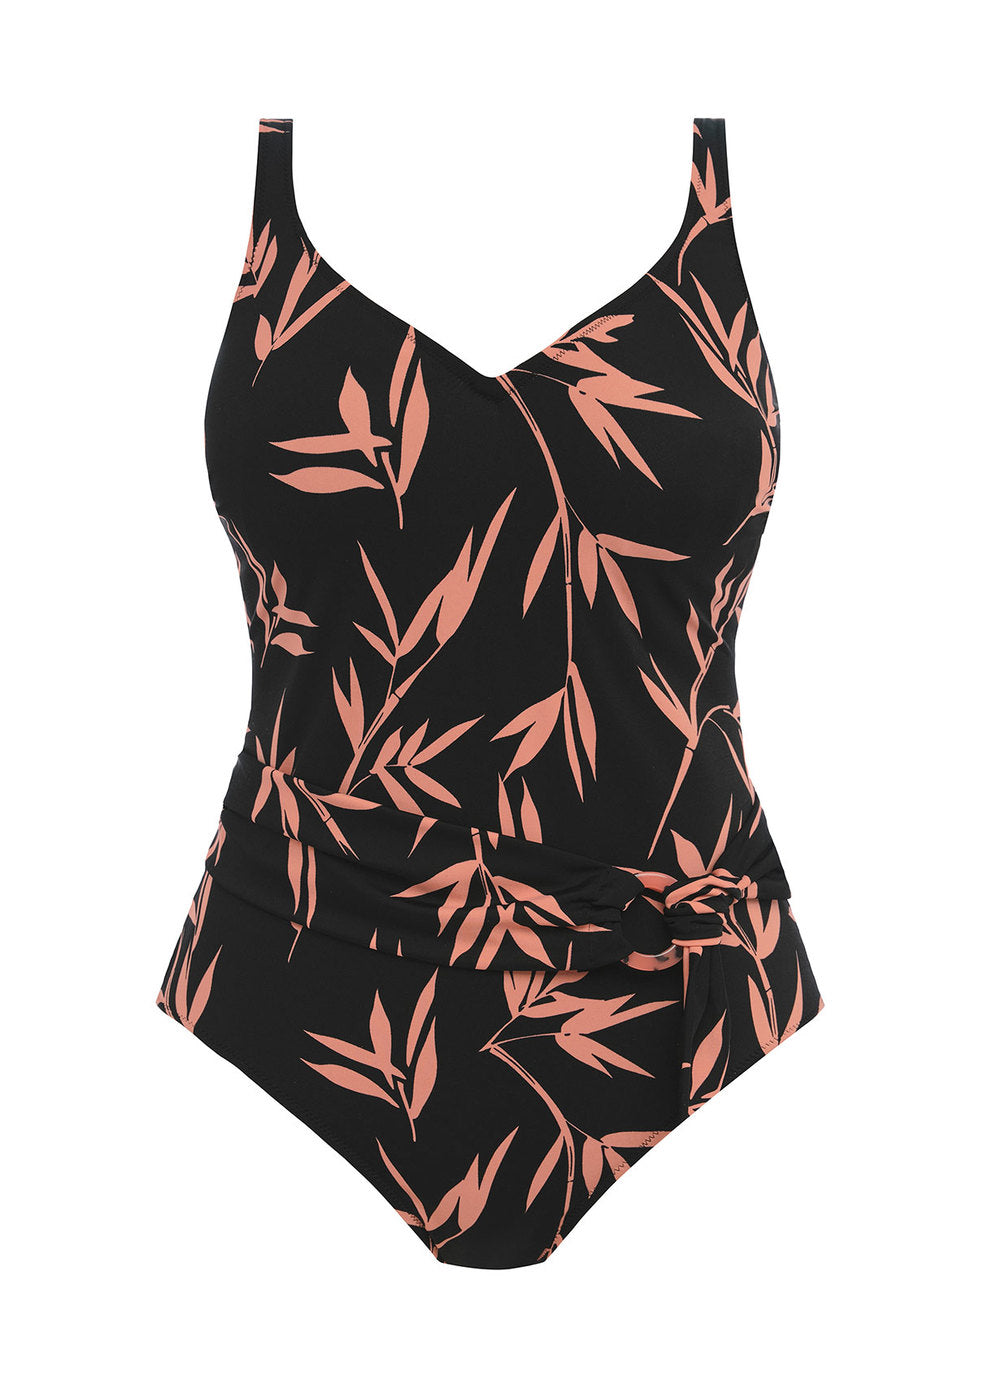 Fantasie Luna Bay Lacquered Black Plunge One-Piece Underwire Swimsuit